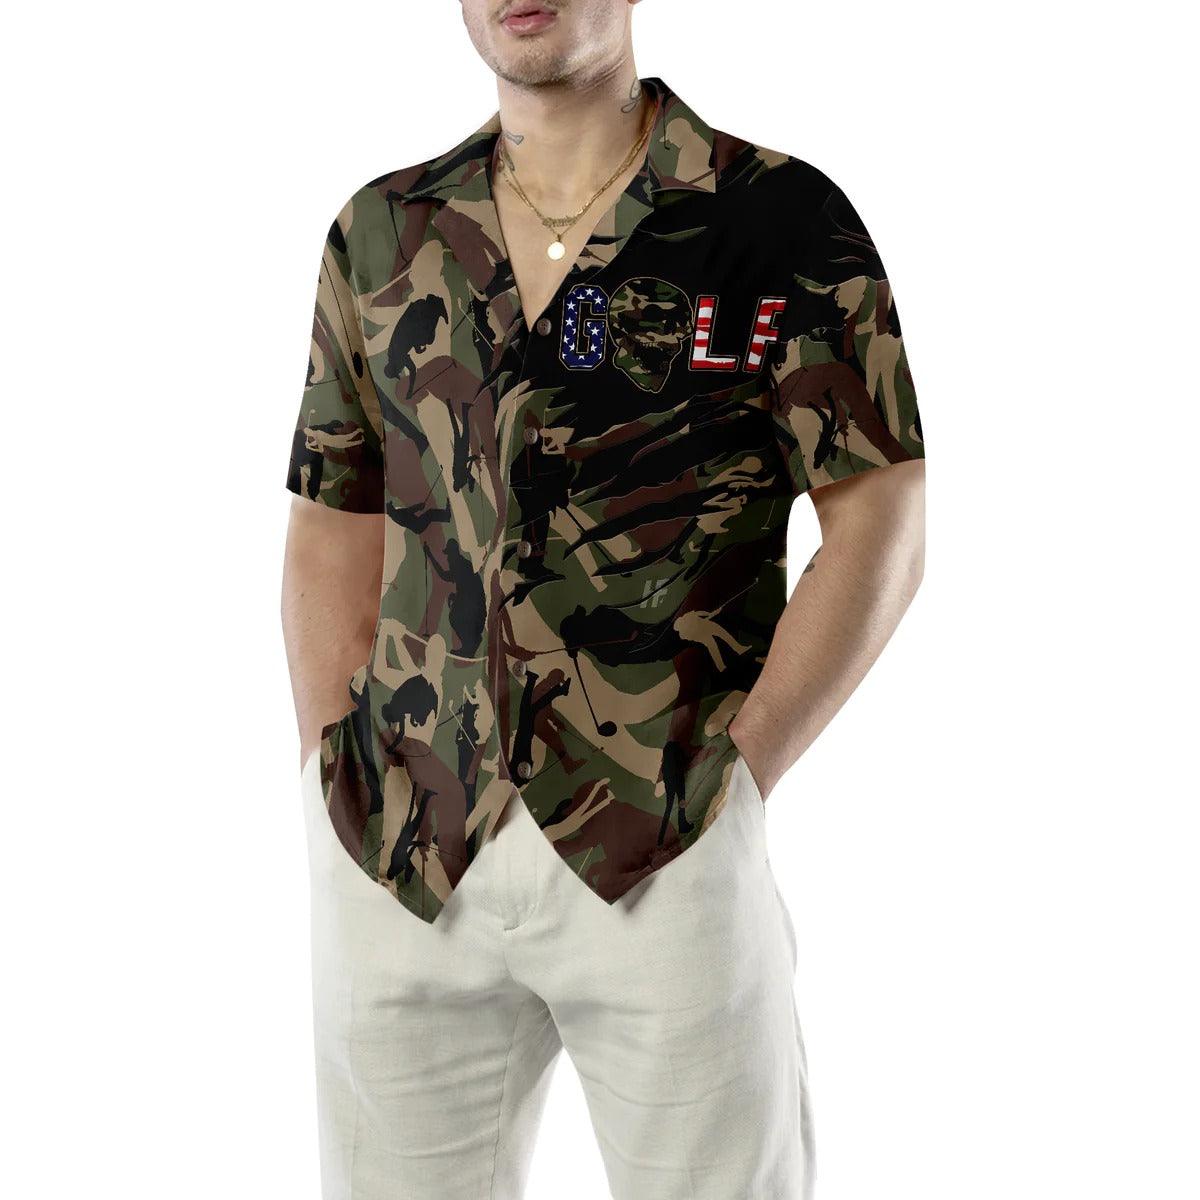 Golf Hawaiian Shirt, Camouflage Golf Hawaiian Shirt, Camouflage Aloha Shirt - Perfect Gift For Men, Women, Husband, Wife, Golf Lover, Friend, Family - Amzanimalsgift